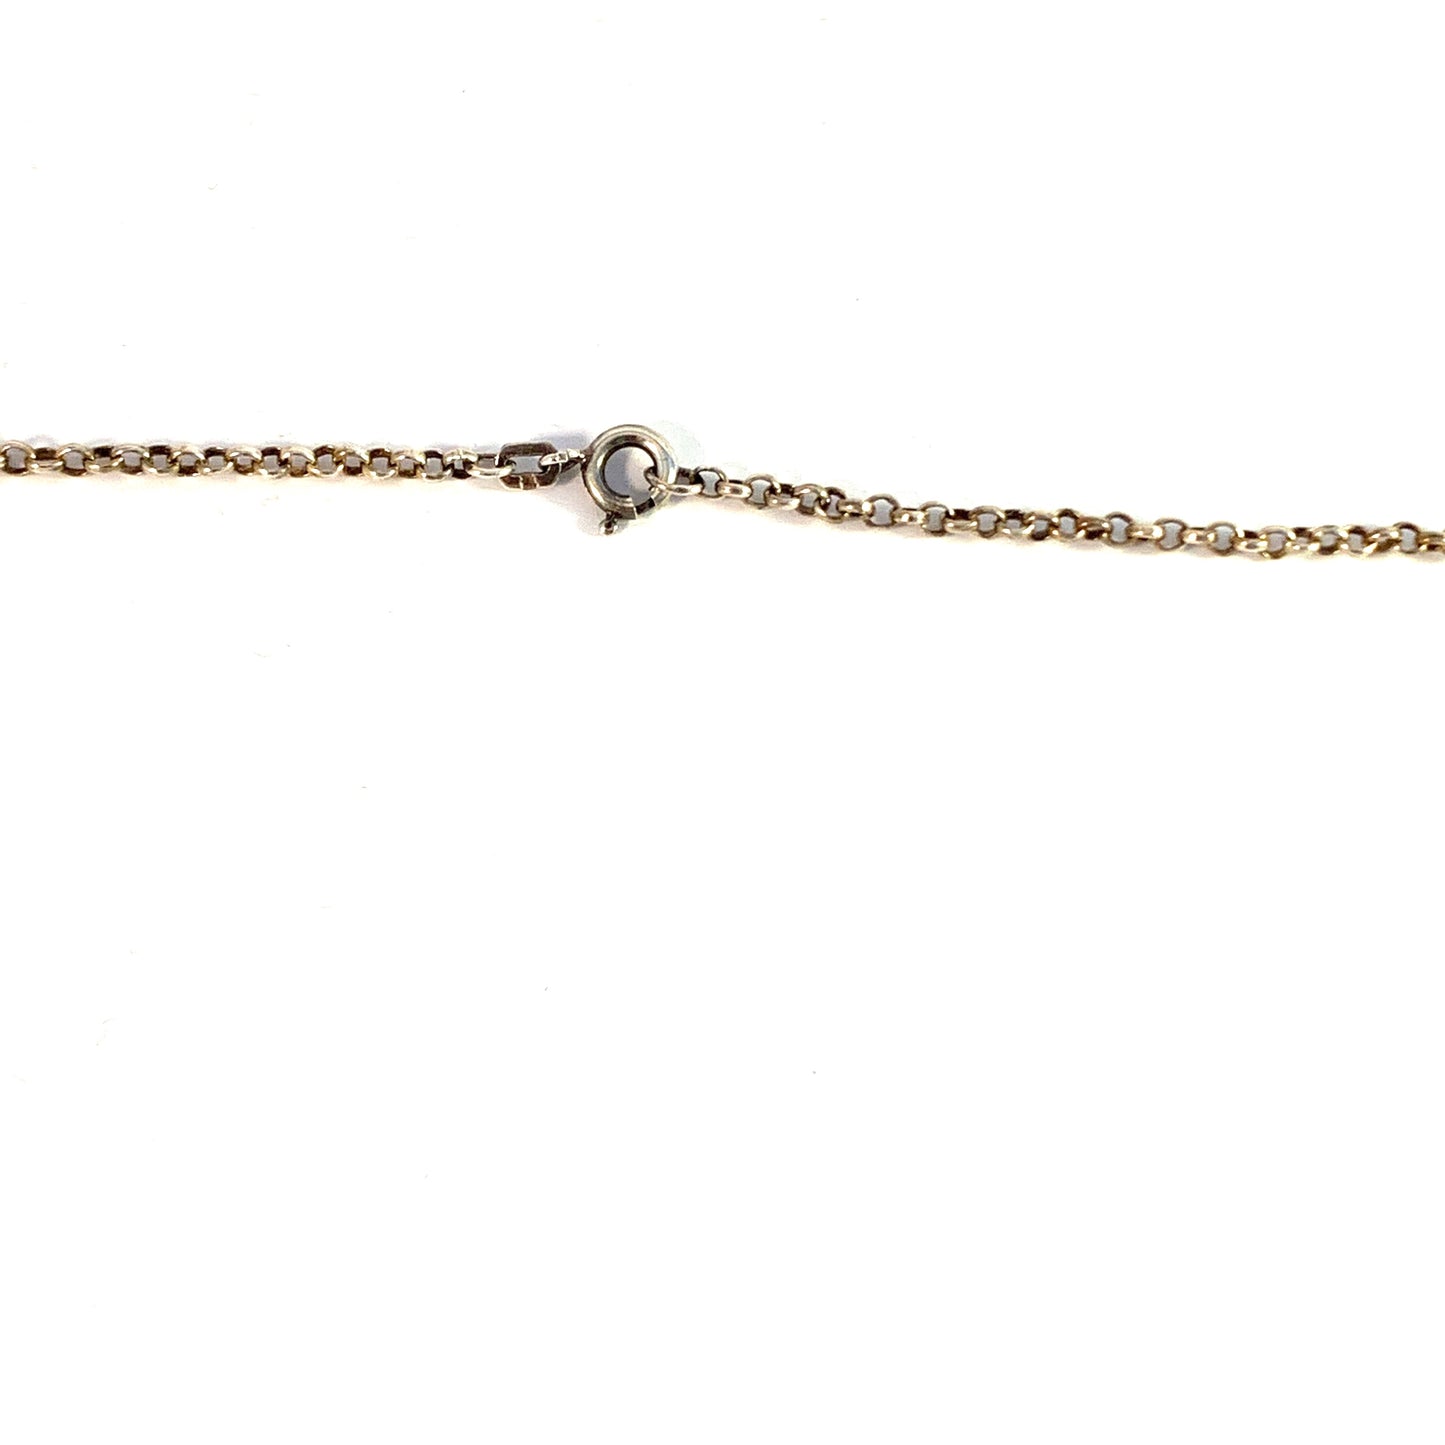 Nordström, Sweden year 1975. Vintage Sterling Silver Bergslagen-stone Pendant Long Chain Necklace.